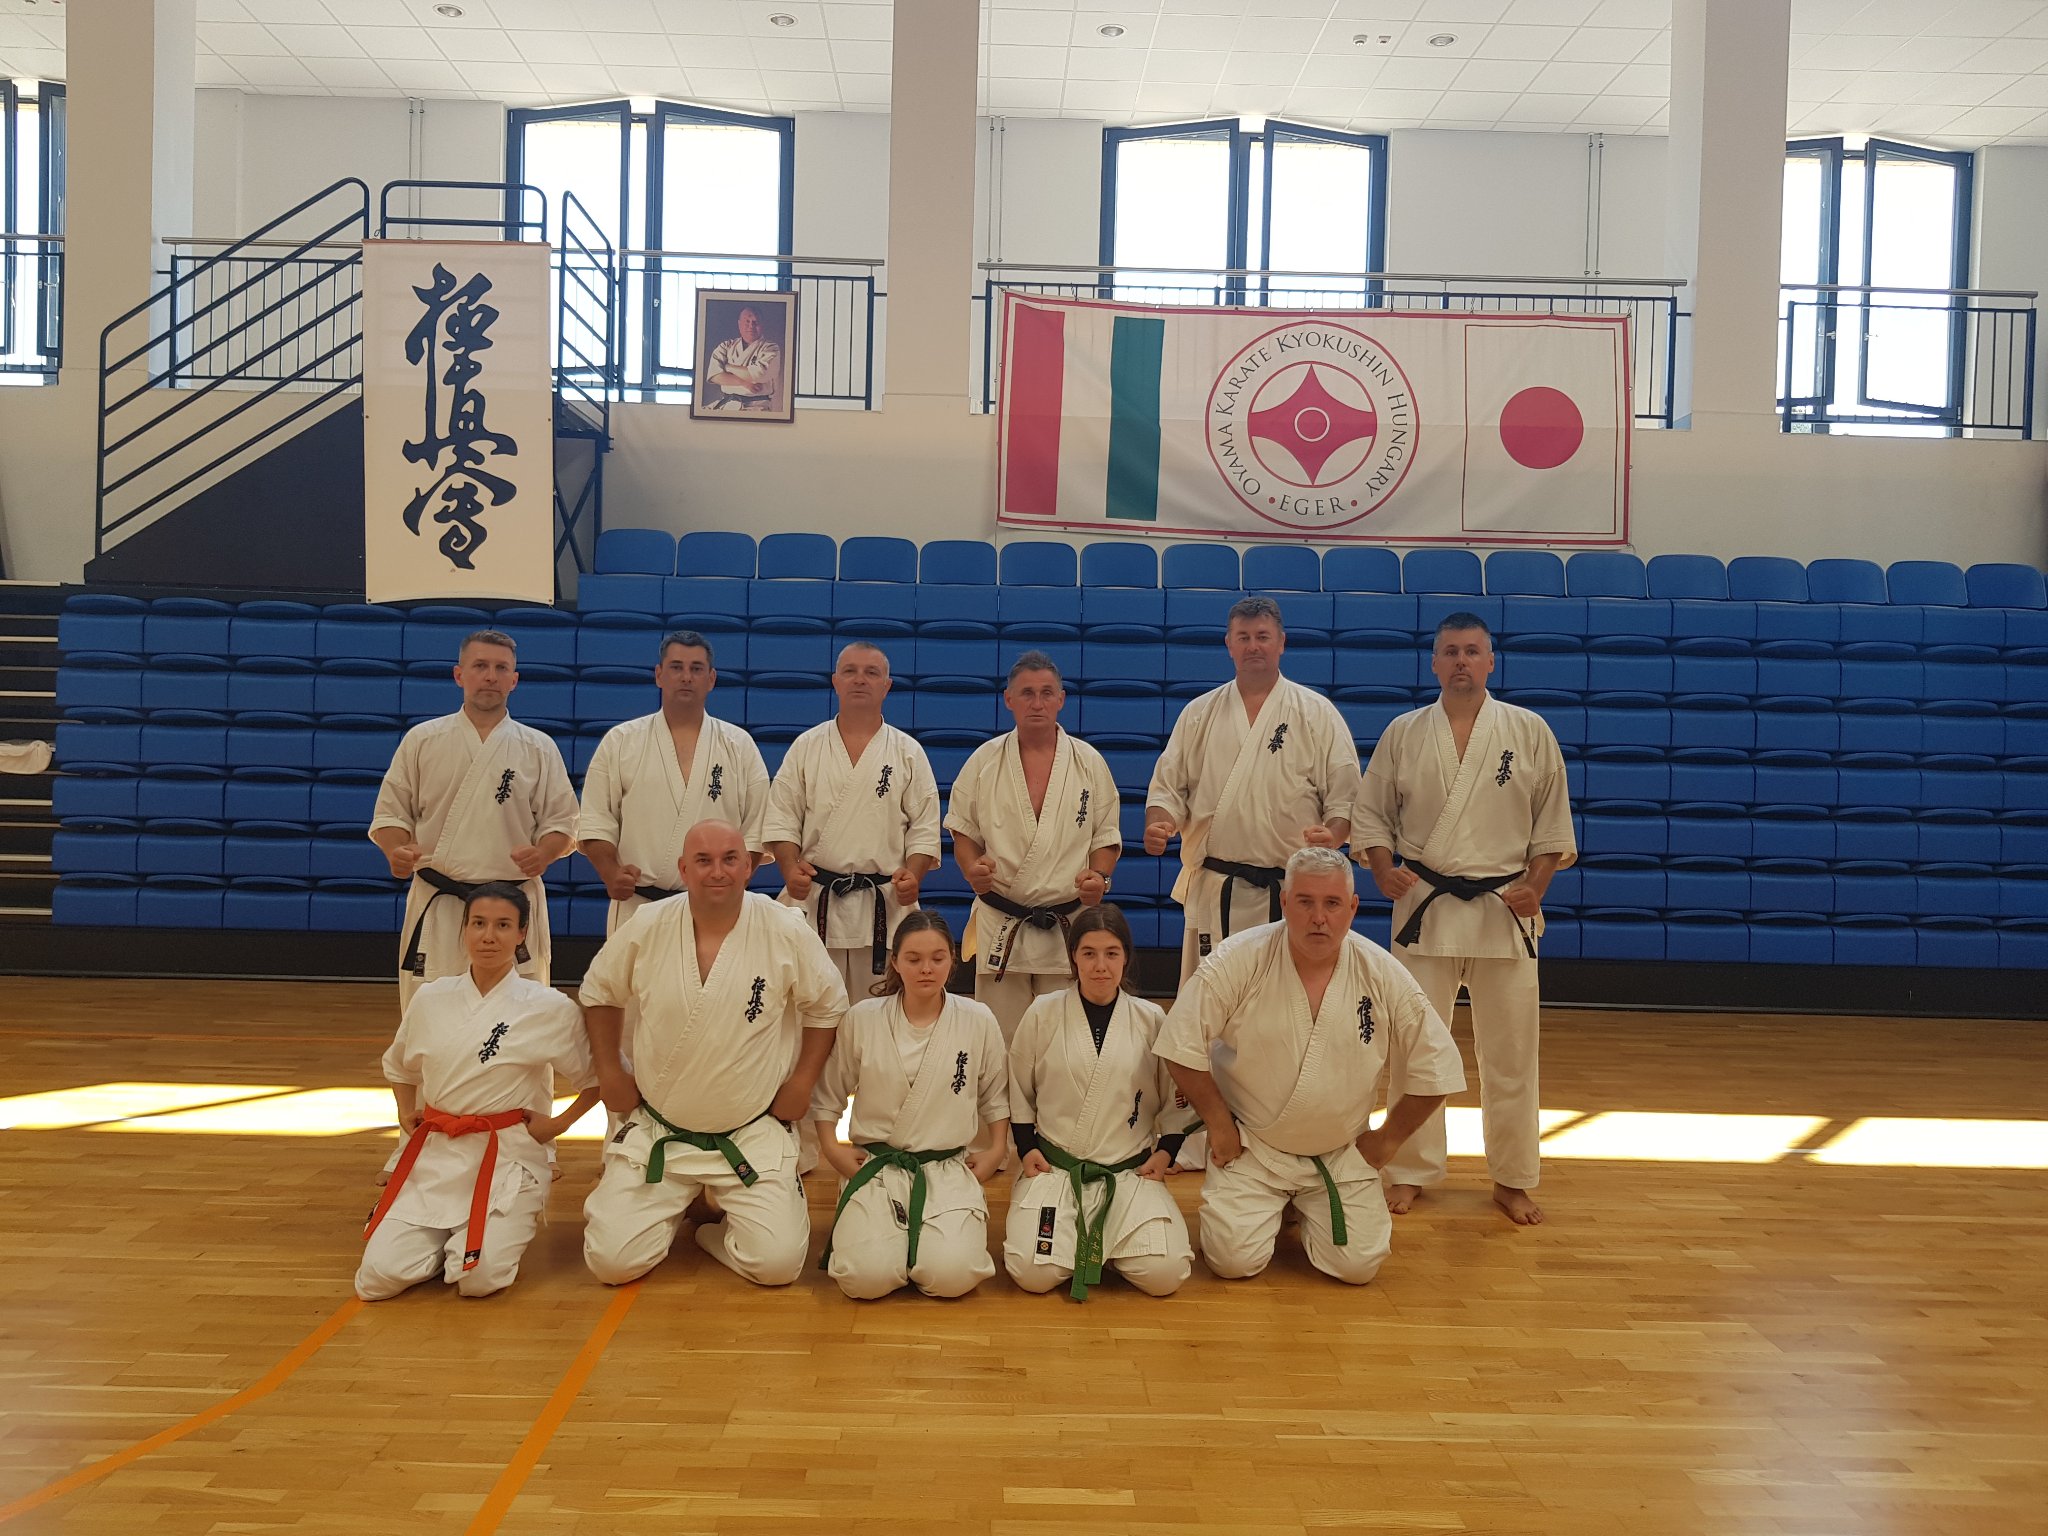 Kyokai Dojo edzőtábori csoportkép